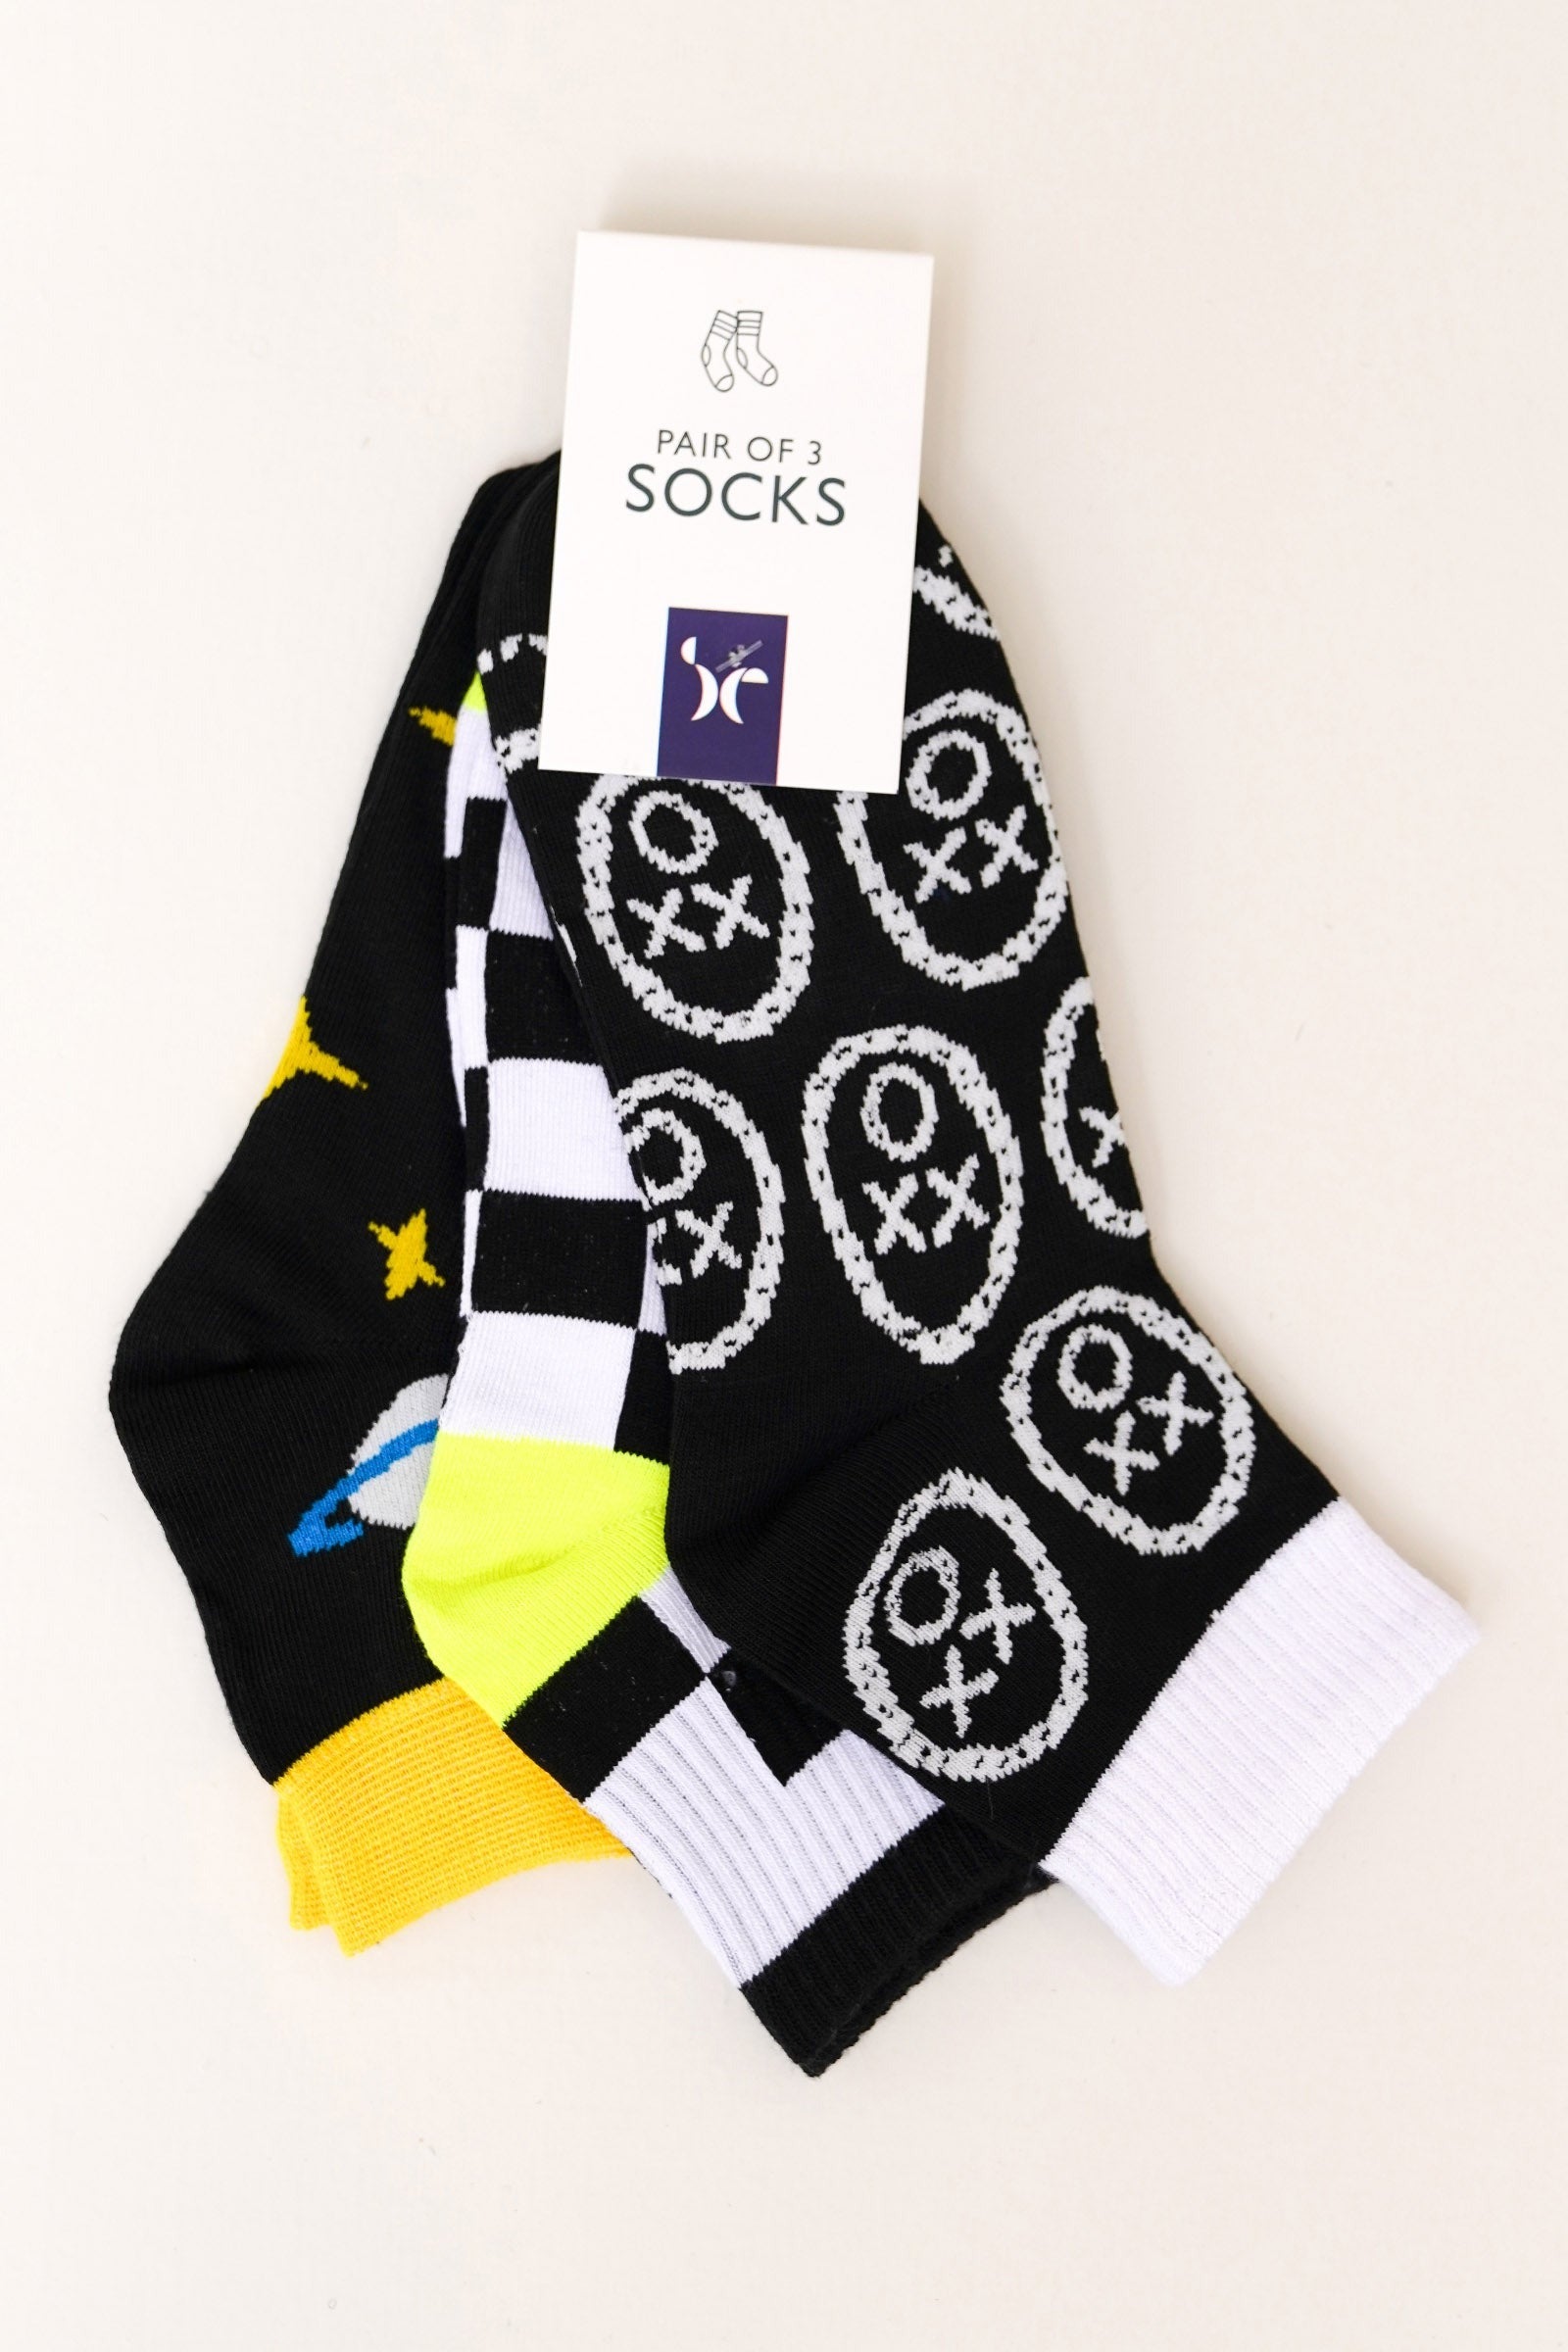 Pack of Socks